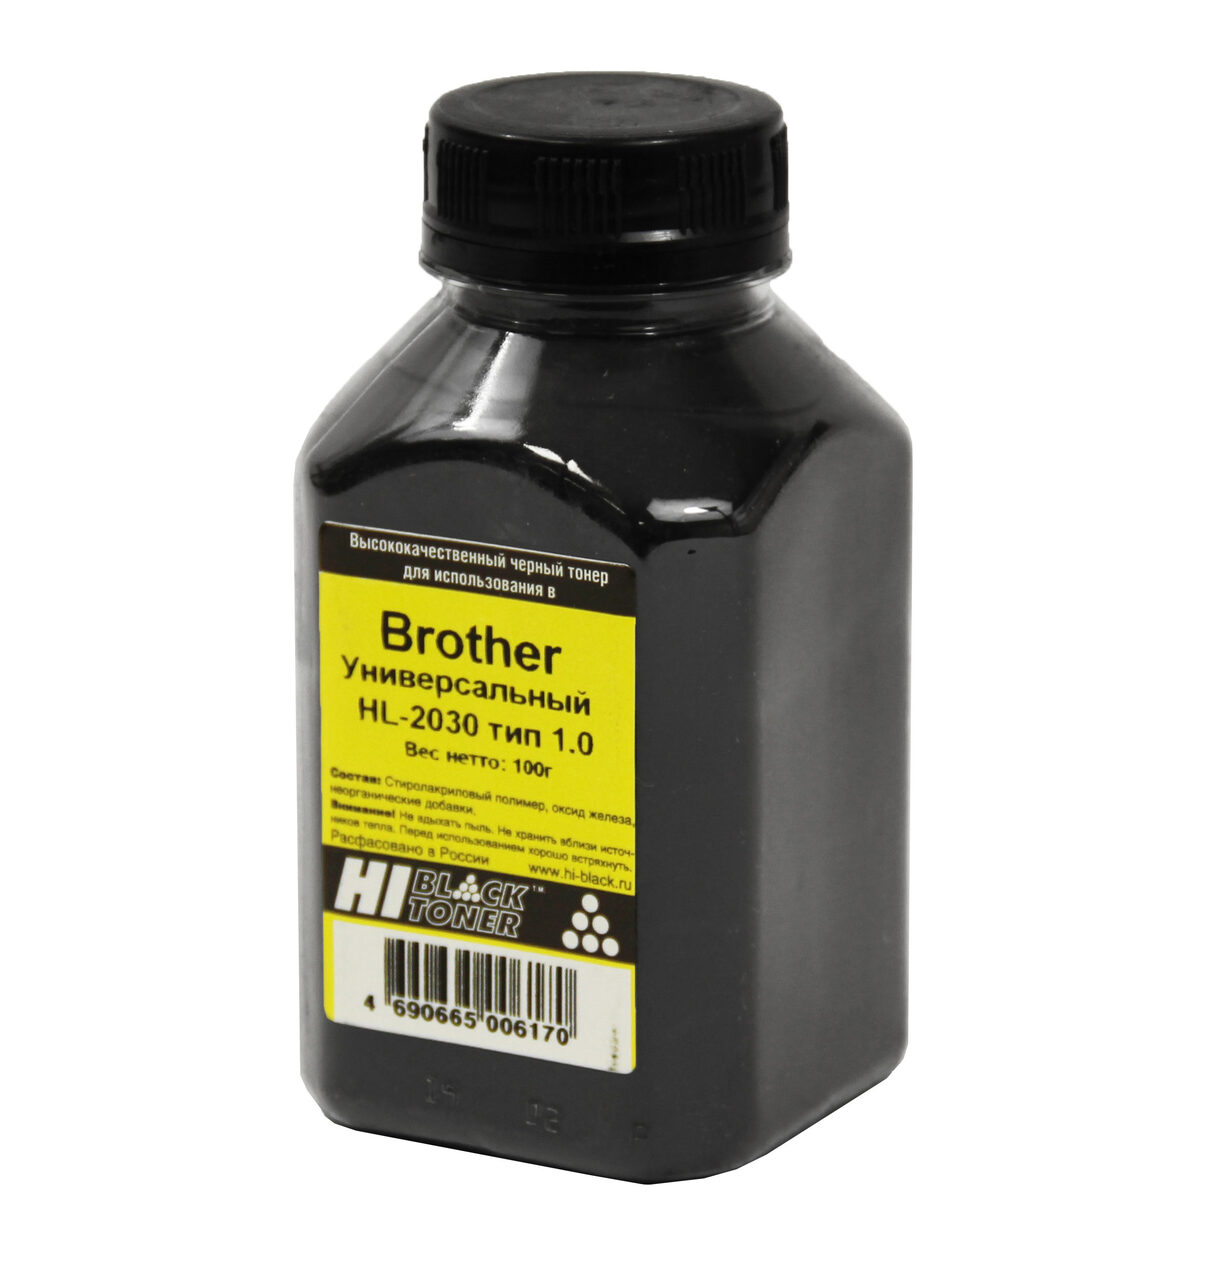 Тонер Hi-Black Универсальный для Brother HL-2030, Тип 1.0,Bk, 100 г, банка